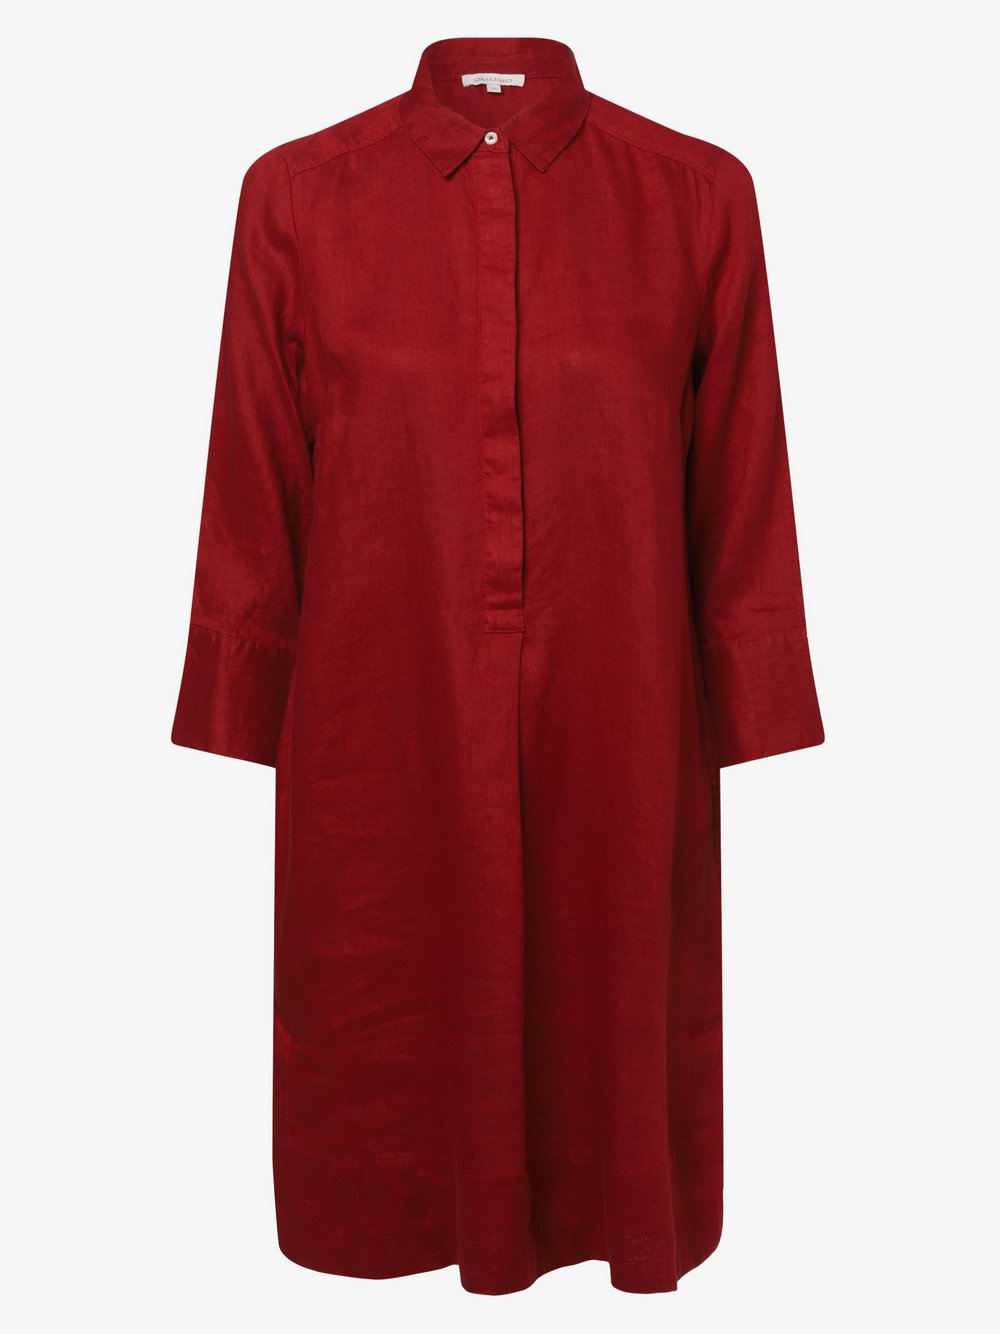 Apriori - Damska sukienka lniana, czerwony